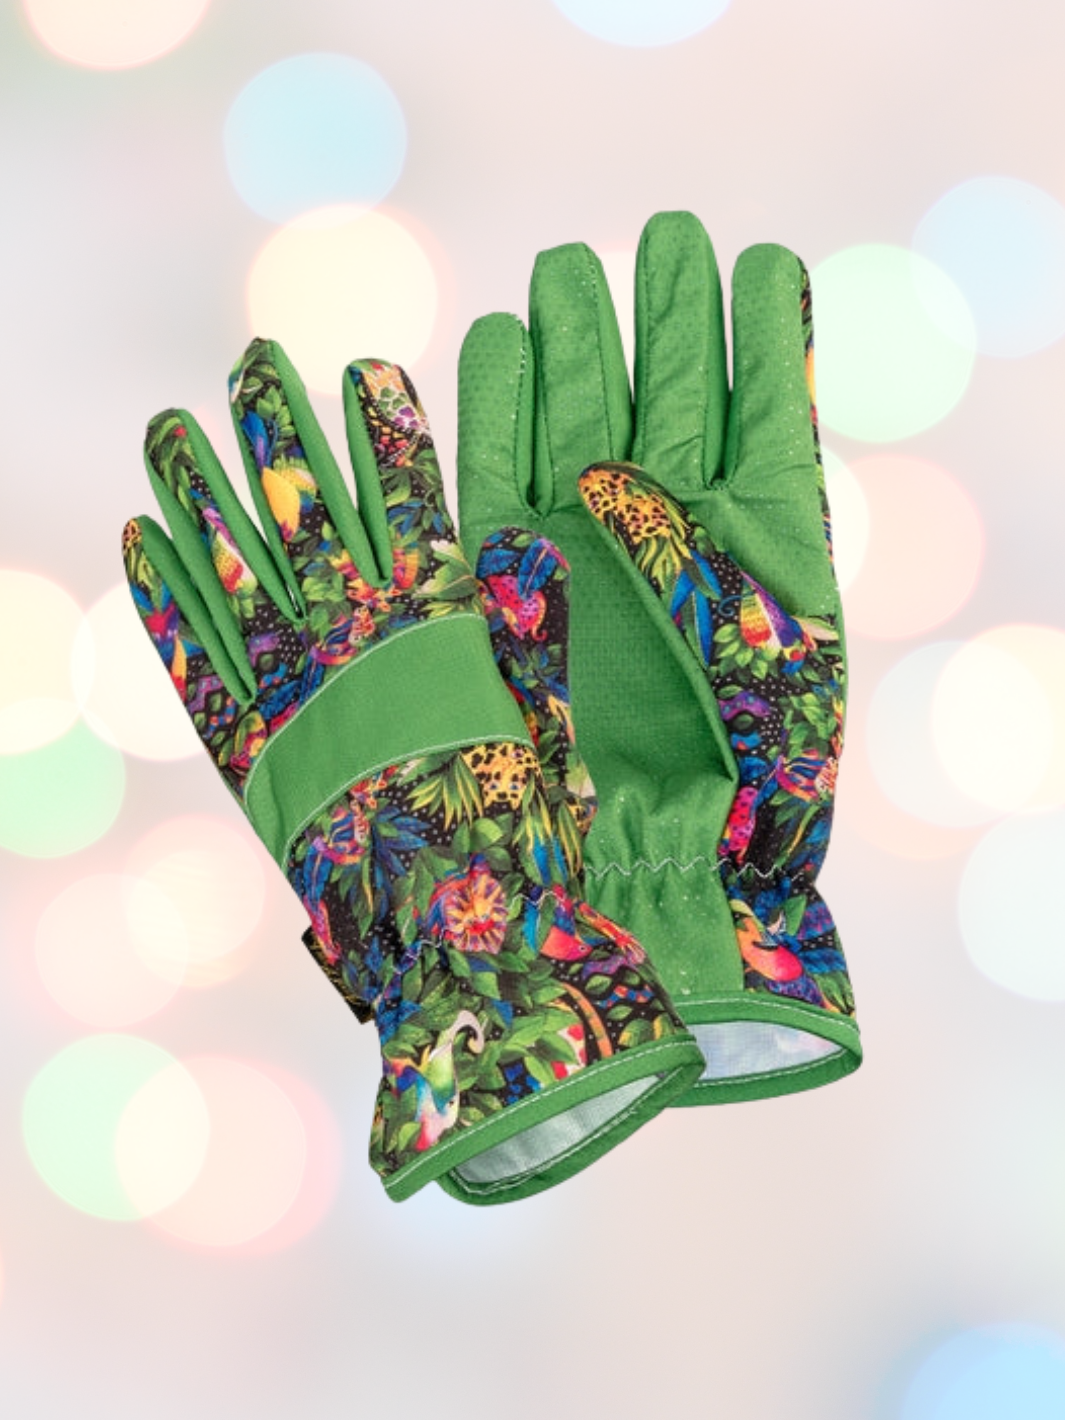 Garden Gloves-Green